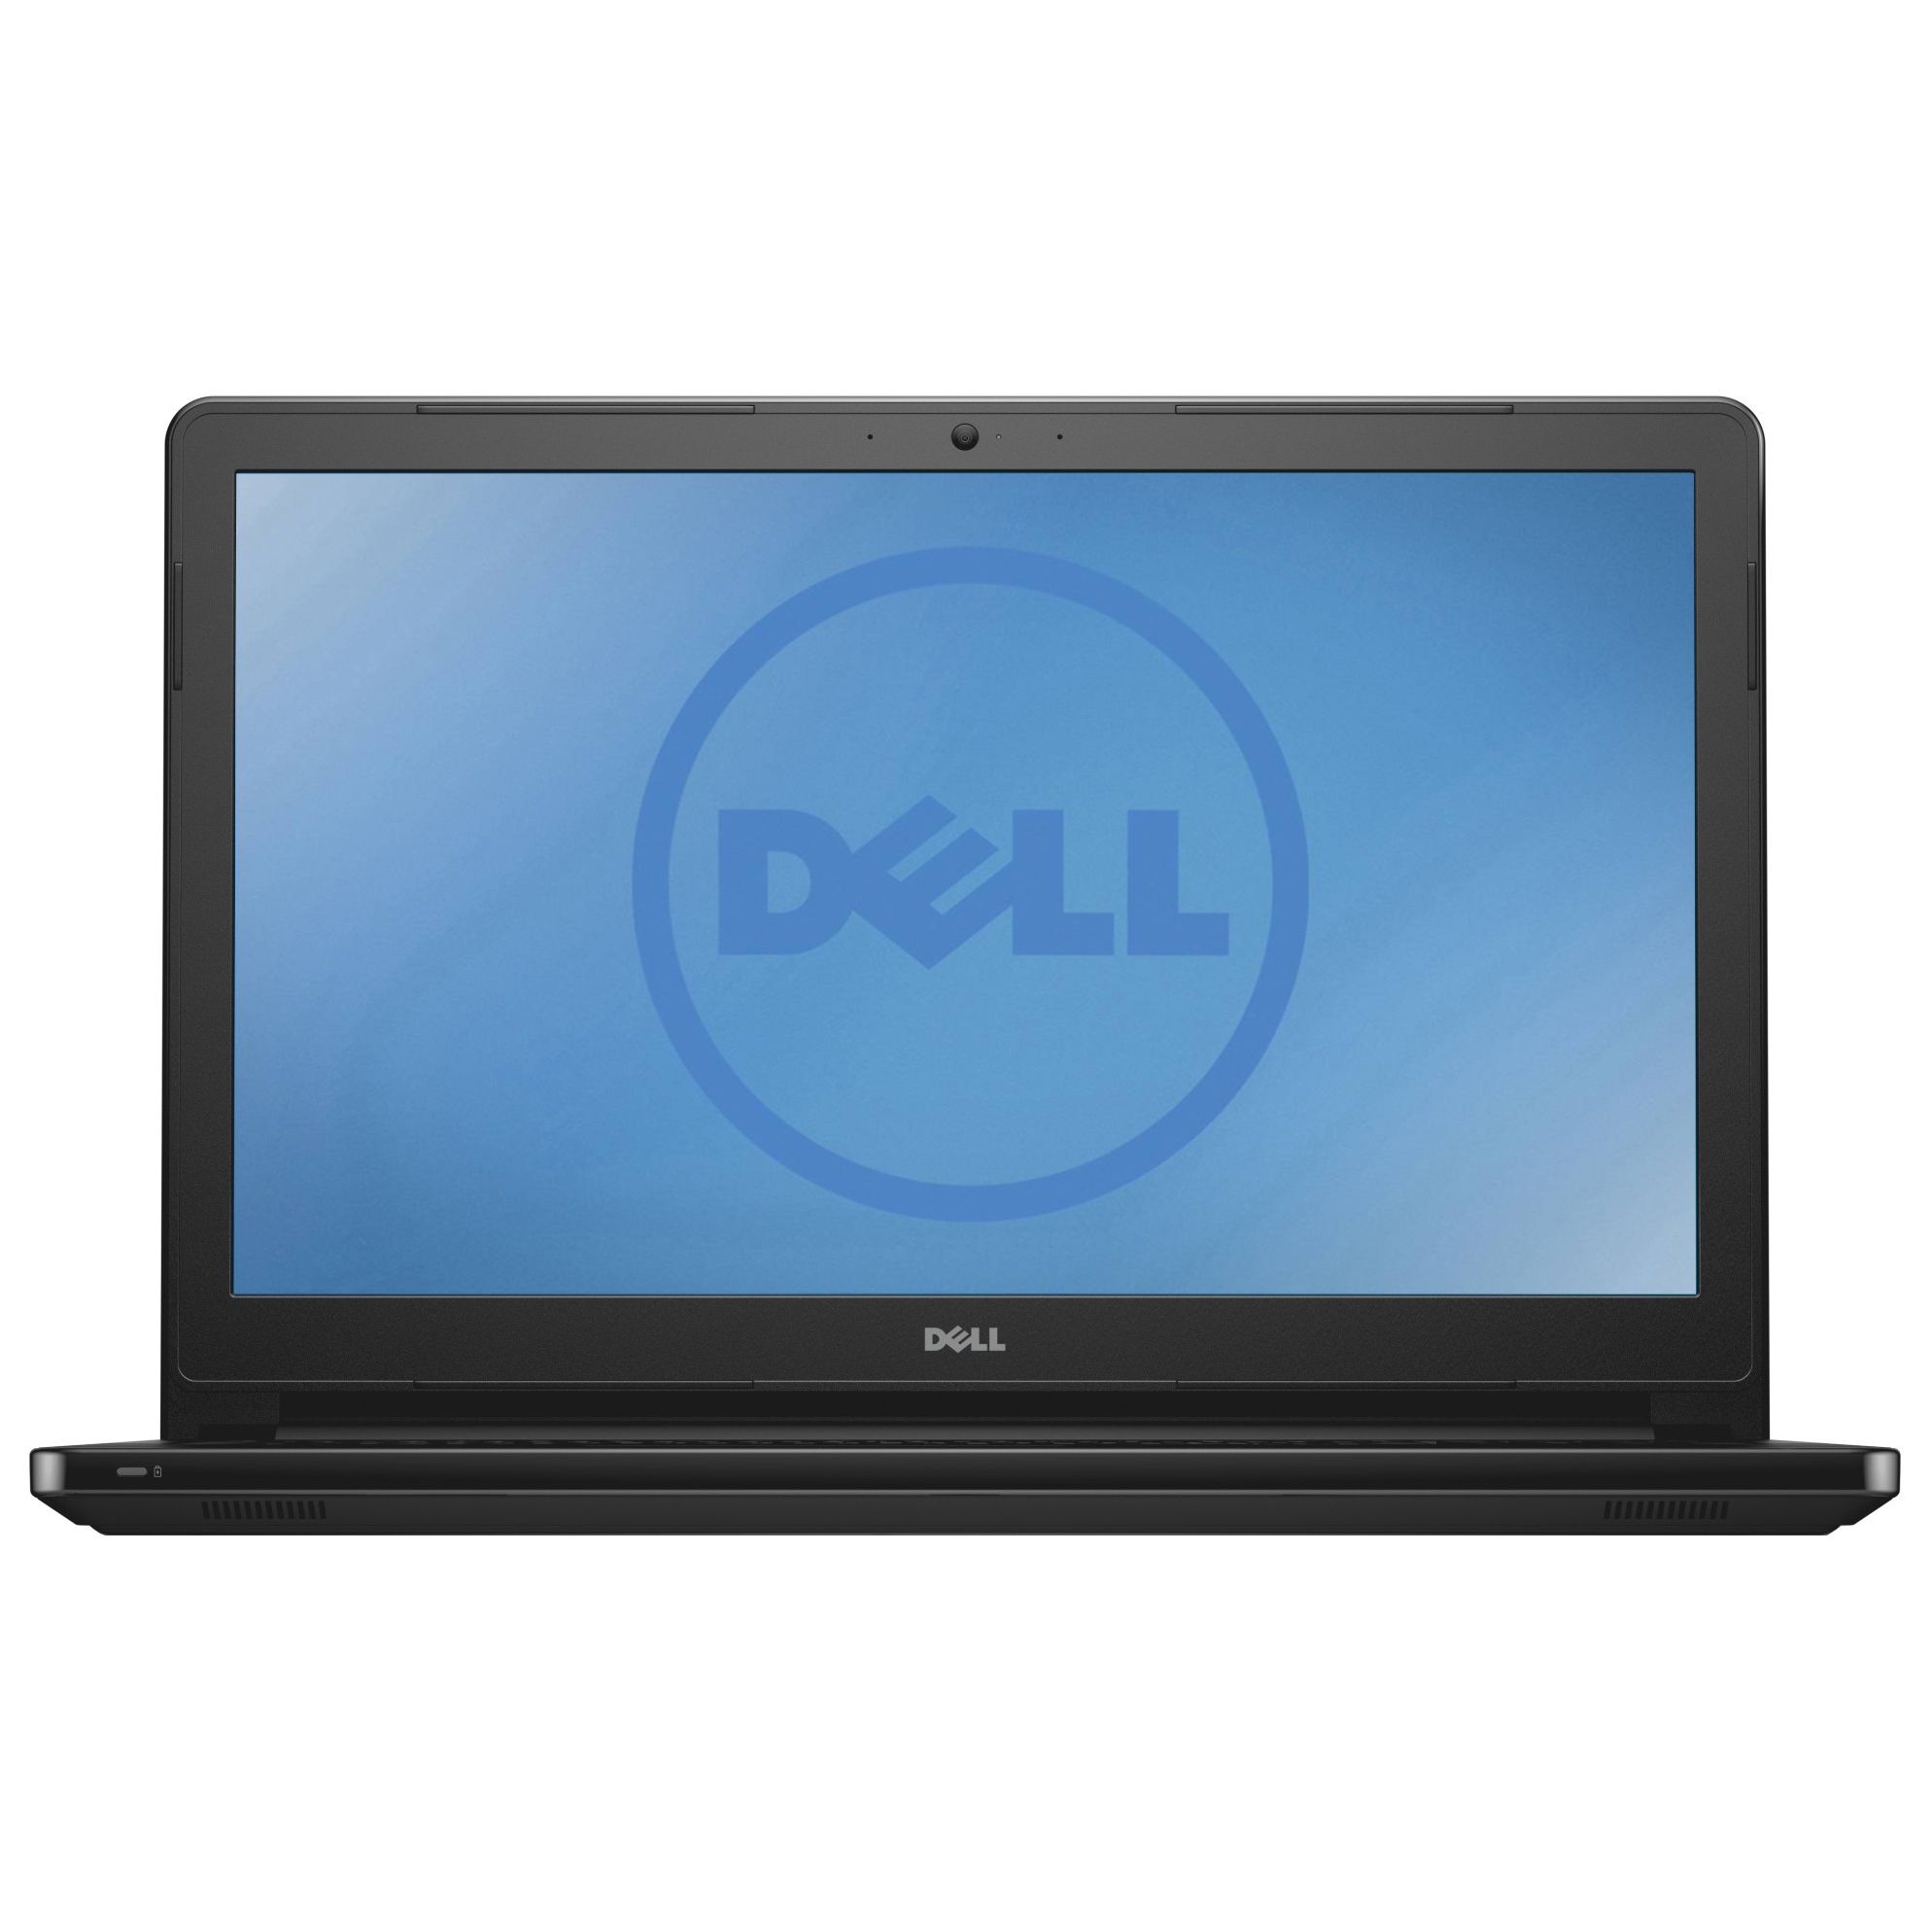 Laptop Dell Inspiron 5555, AMD A6-7310, 4GB DDR3, HDD 500GB, AMD Radeon R5 M335 2GB, Linux